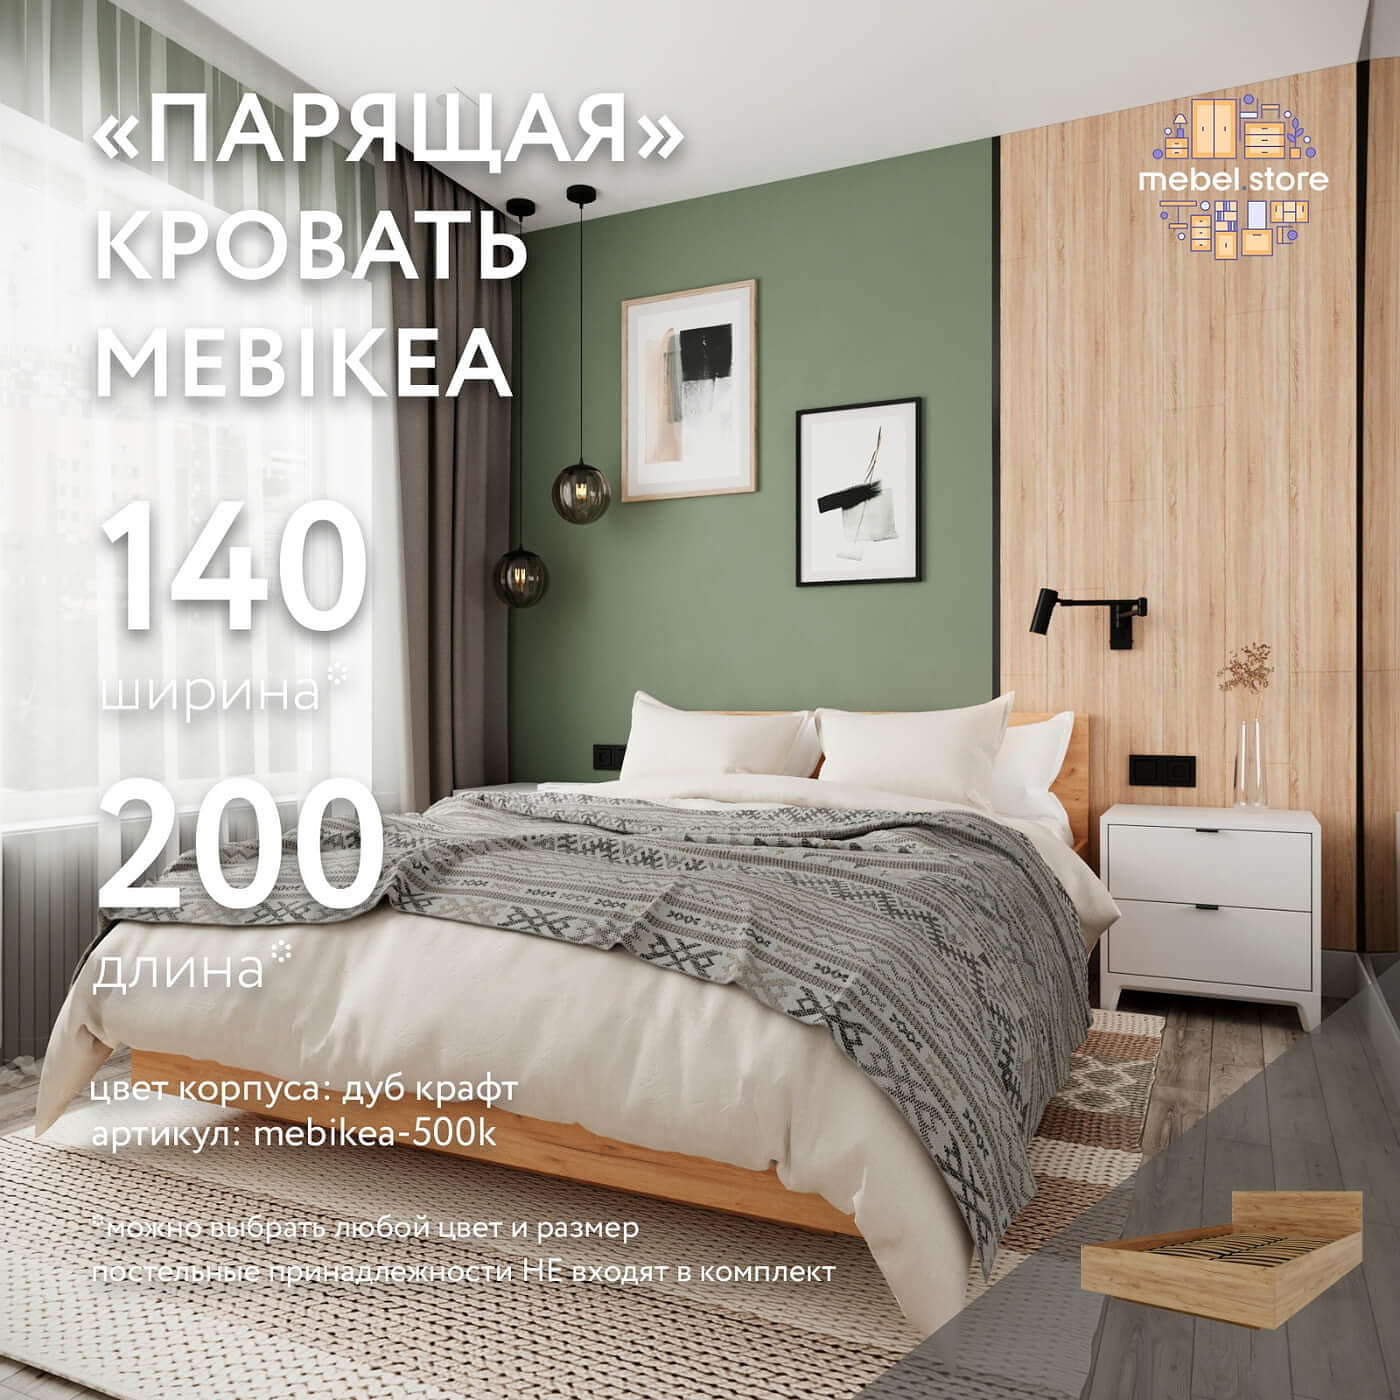 Кровать Mebikea-500k двуспальная минимализм - фото 1 large